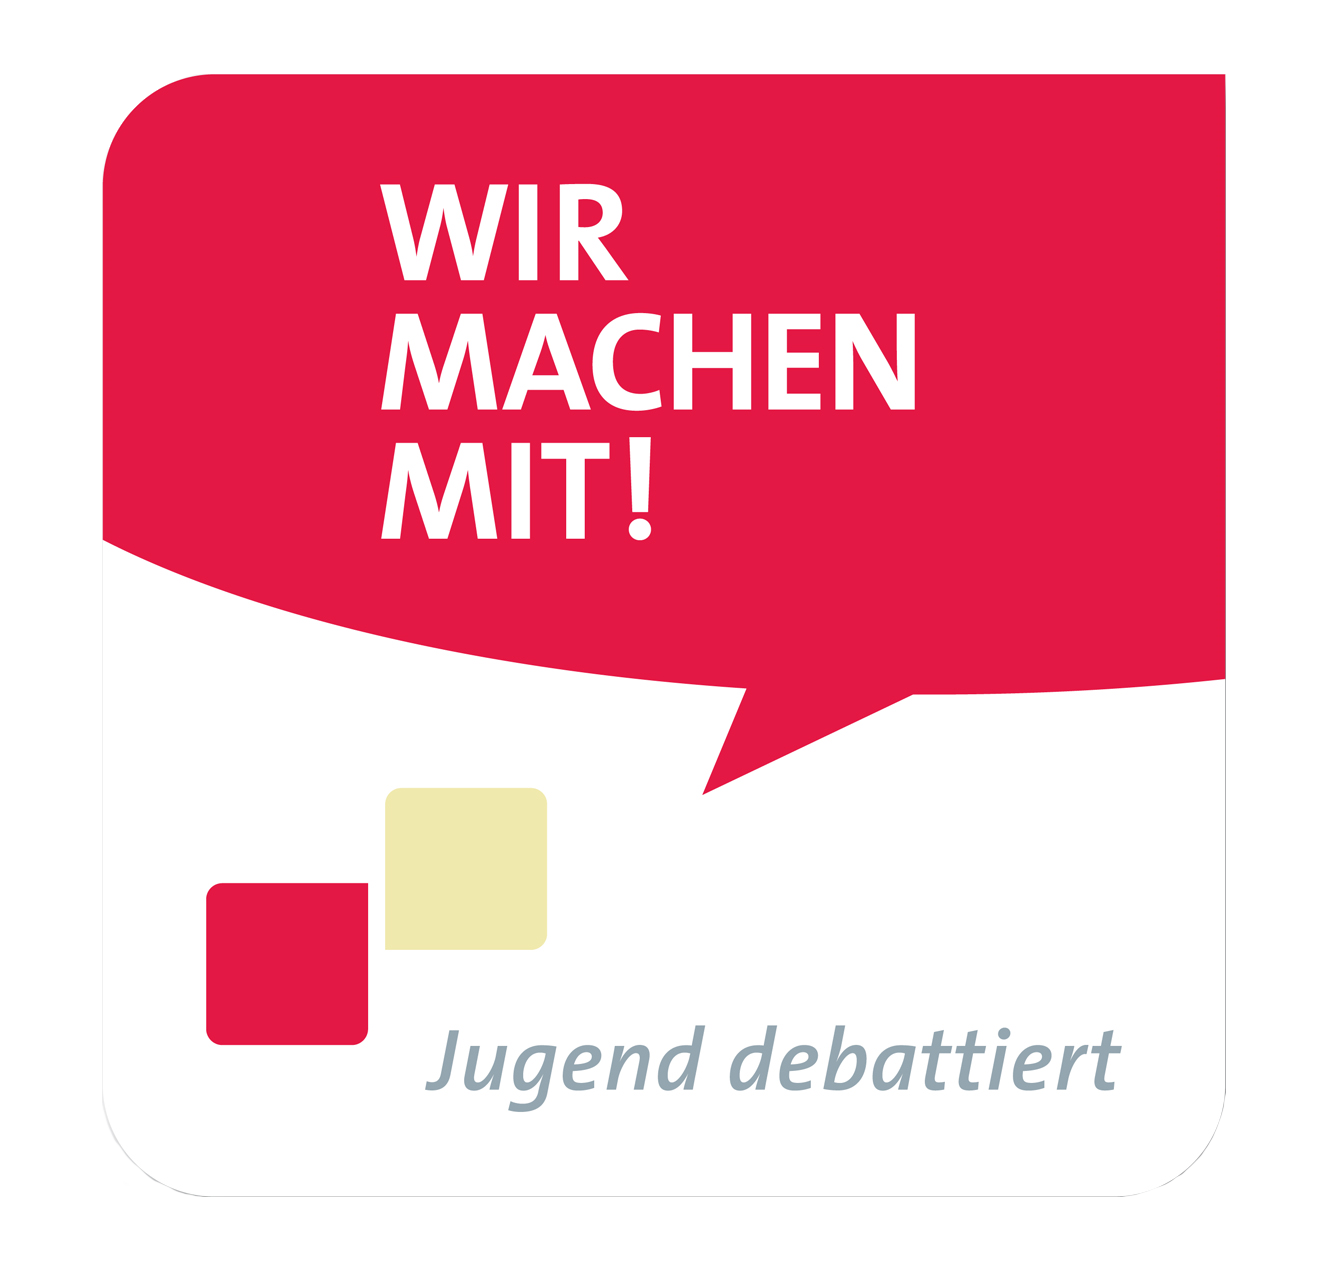 Jugend_debattiert_Emblem